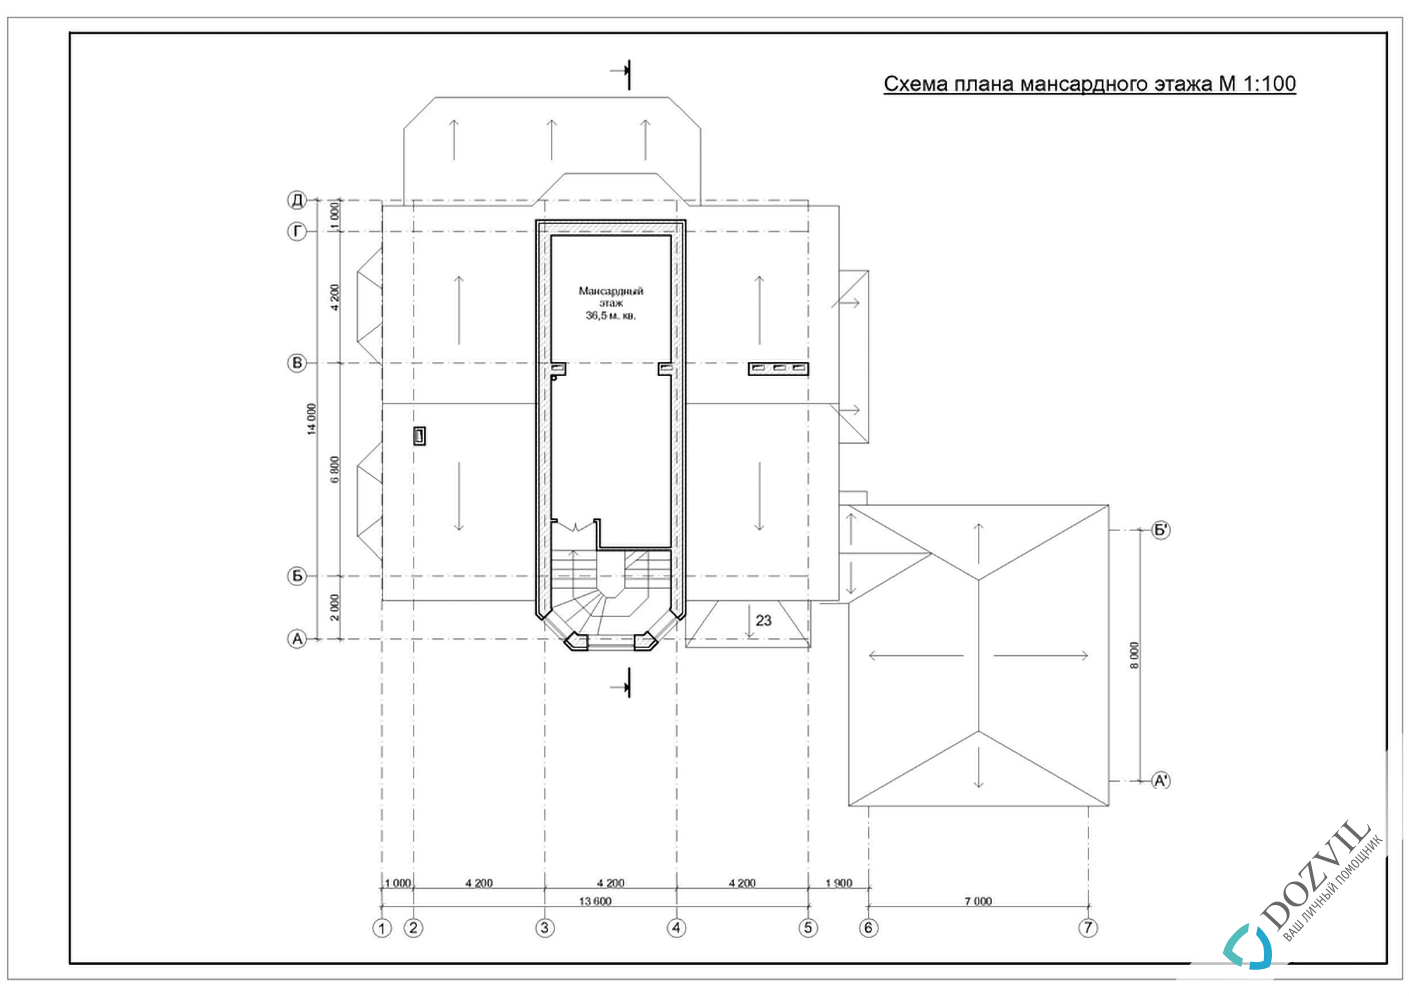 Дозвіл на будівництво > Будинки з загальною площею до 500 квадратних метрів > 2 етап - Розробка ескізу намірів будівництва